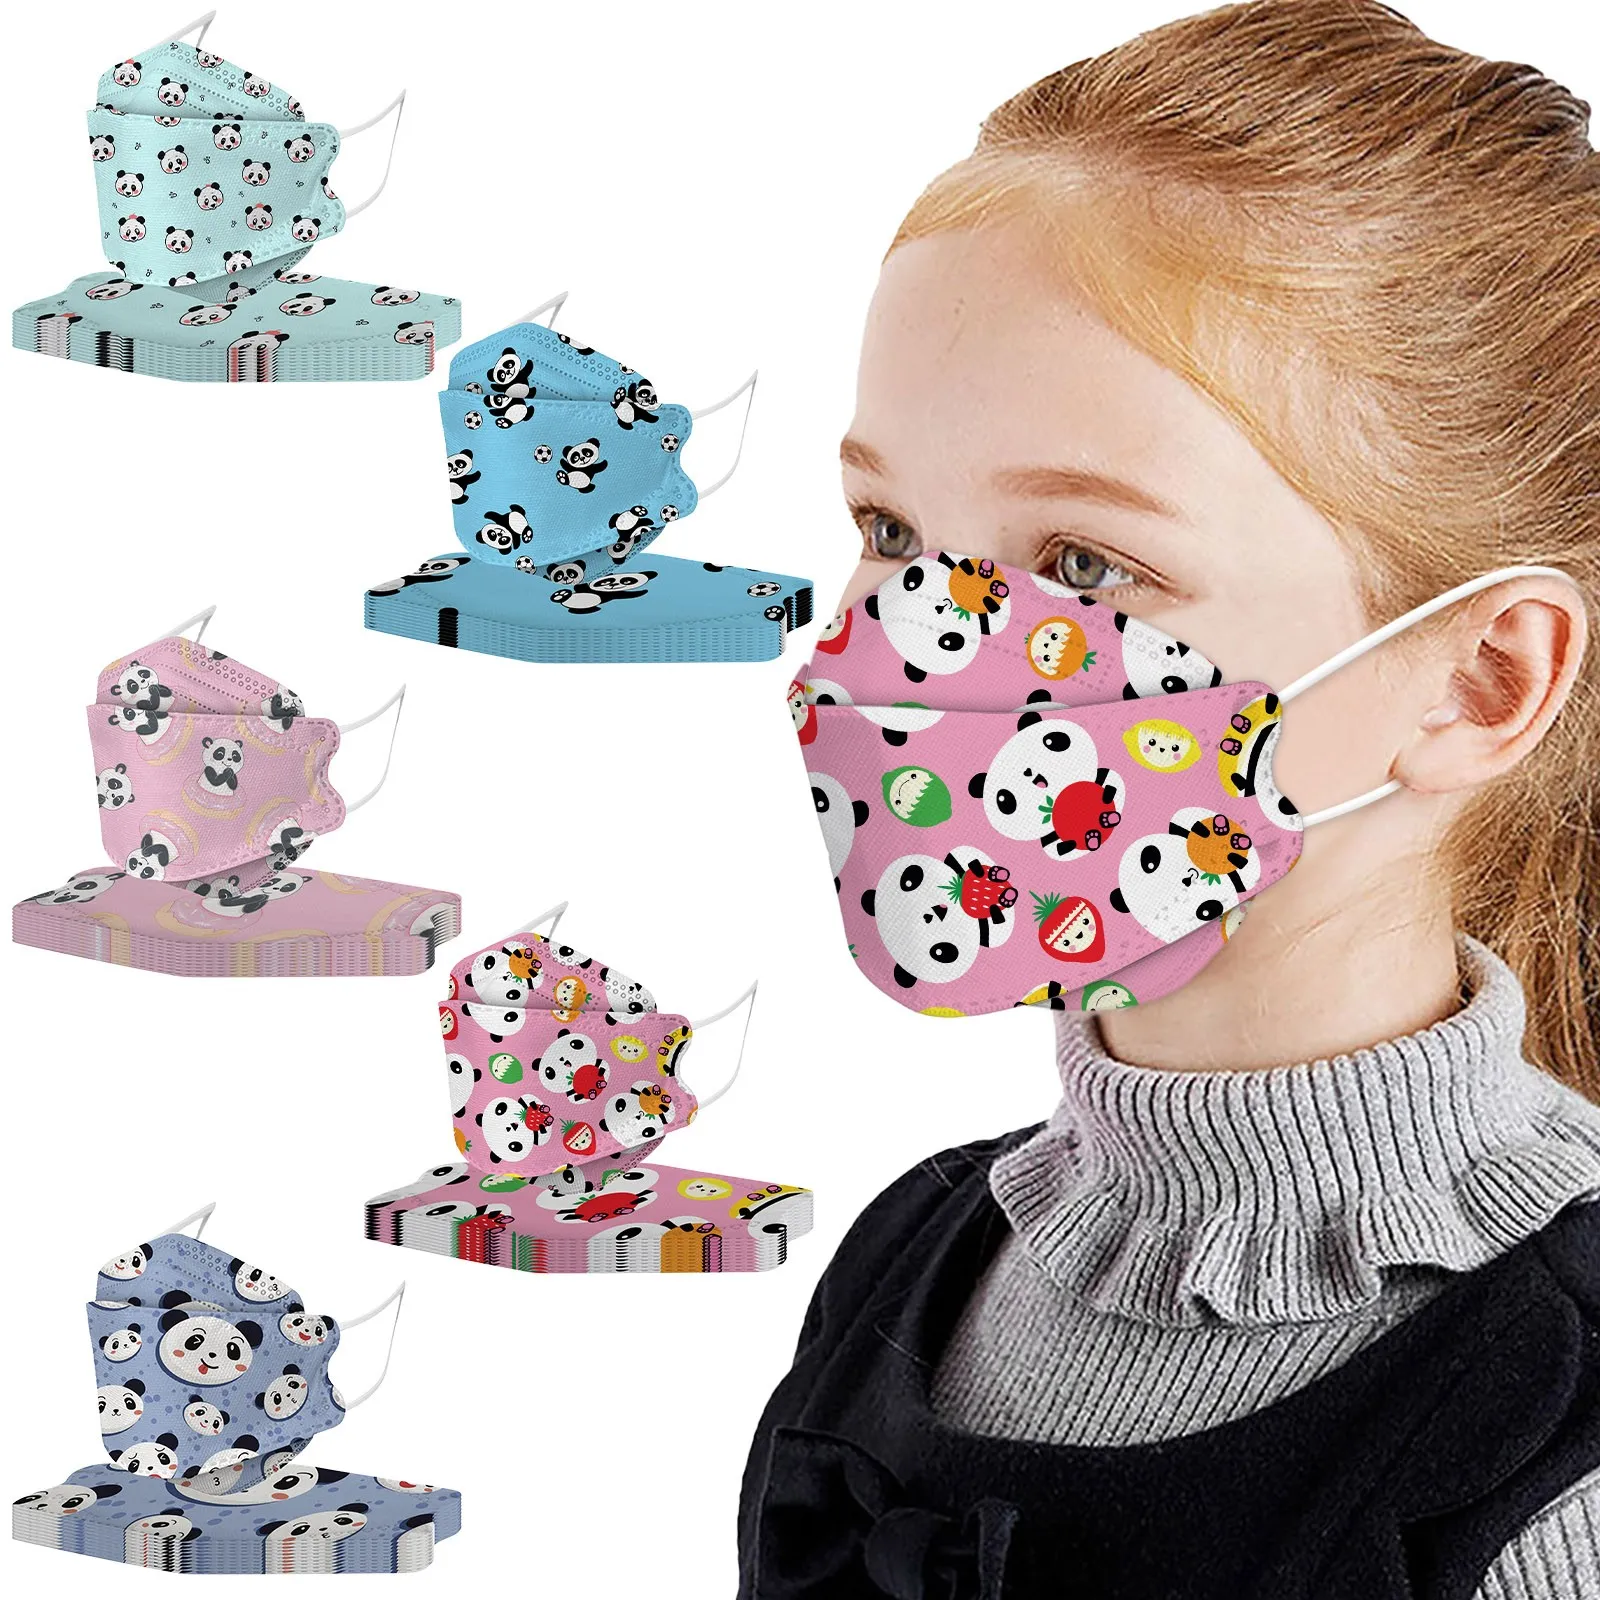 Tanie Pakiet 10 dzieci sport zewnętrzny ochronny maski dziewczyny chłopcy Cartoon